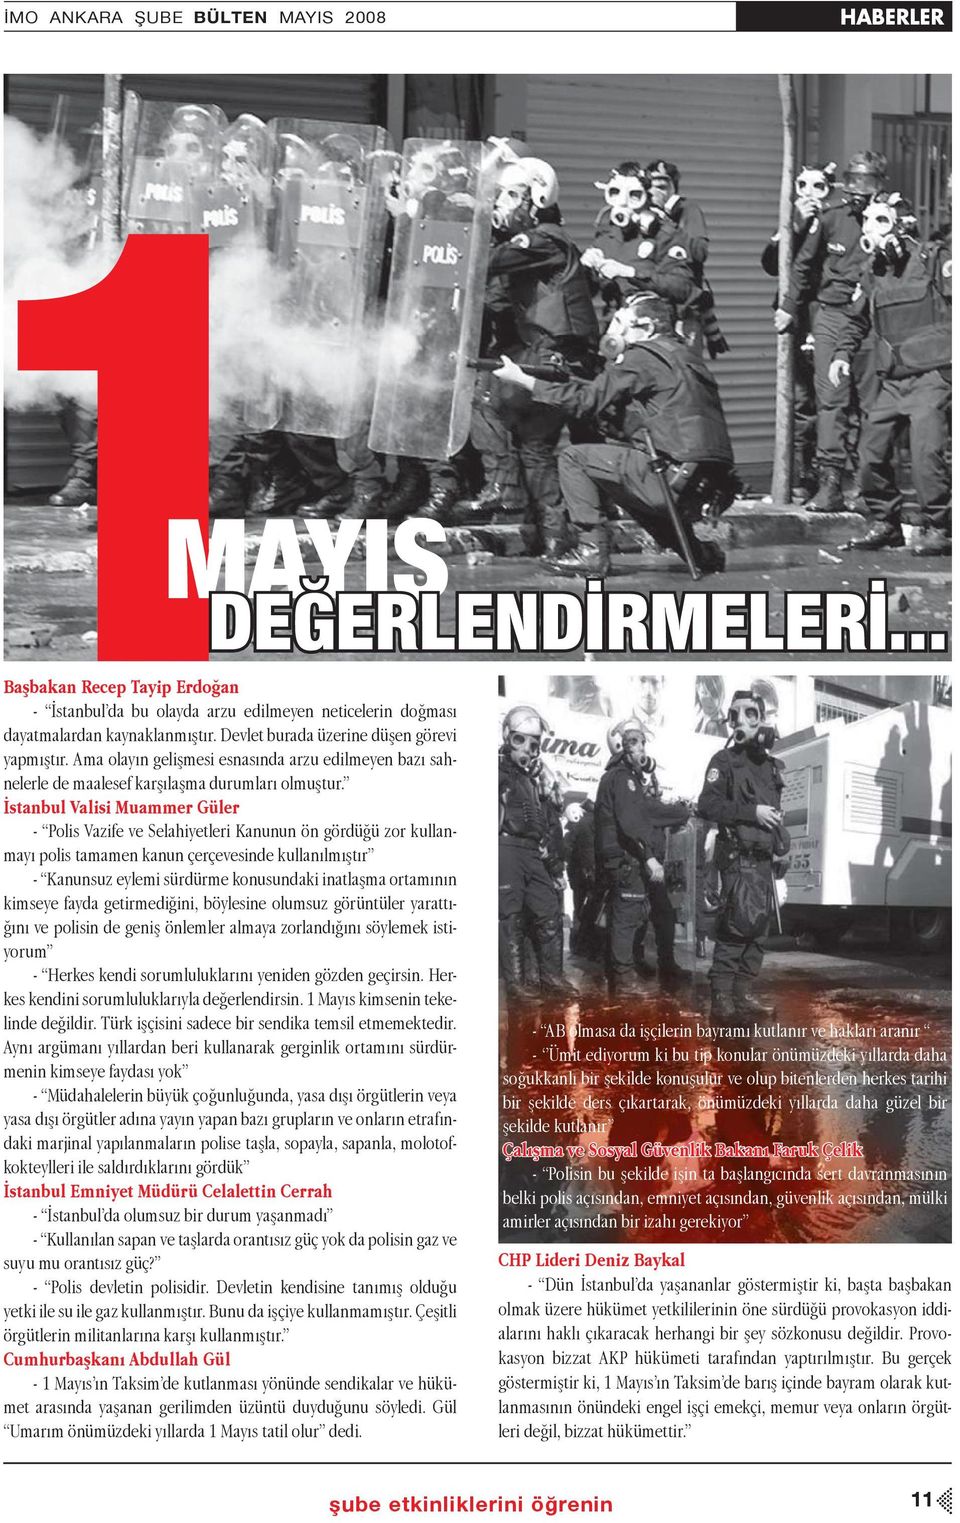 İstanbul Valisi Muammer Güler Polis Vazife ve Selahiyetleri Kanunun ön gördüğü zor kullanmayı polis tamamen kanun çerçevesinde kullanılmıştır Kanunsuz eylemi sürdürme konusundaki inatlaşma ortamının